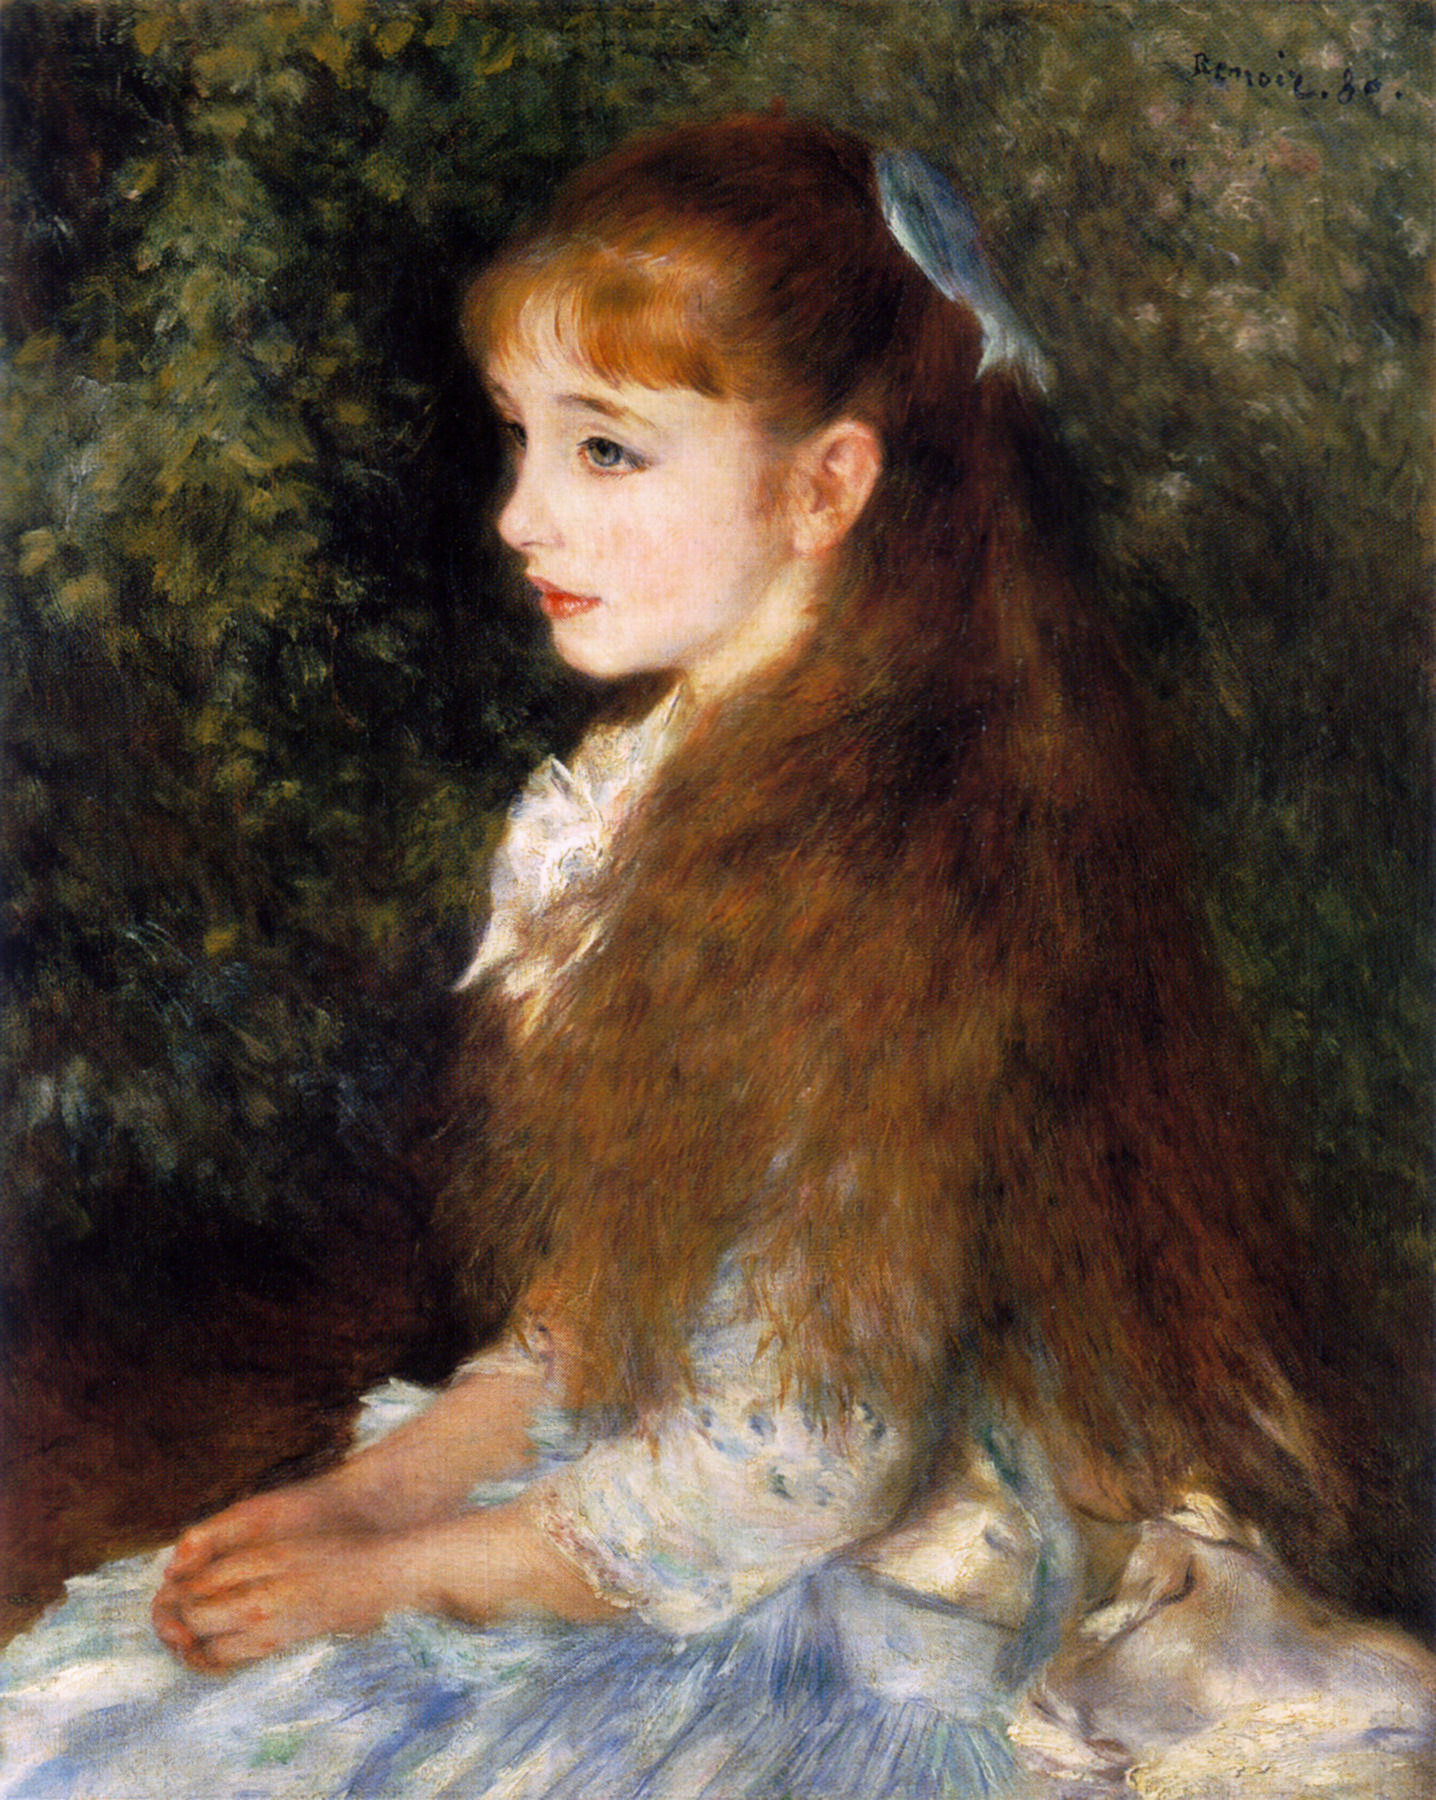 ピエール・ルノワール『イレーヌ・カーン・ダンヴェール嬢』(1880)